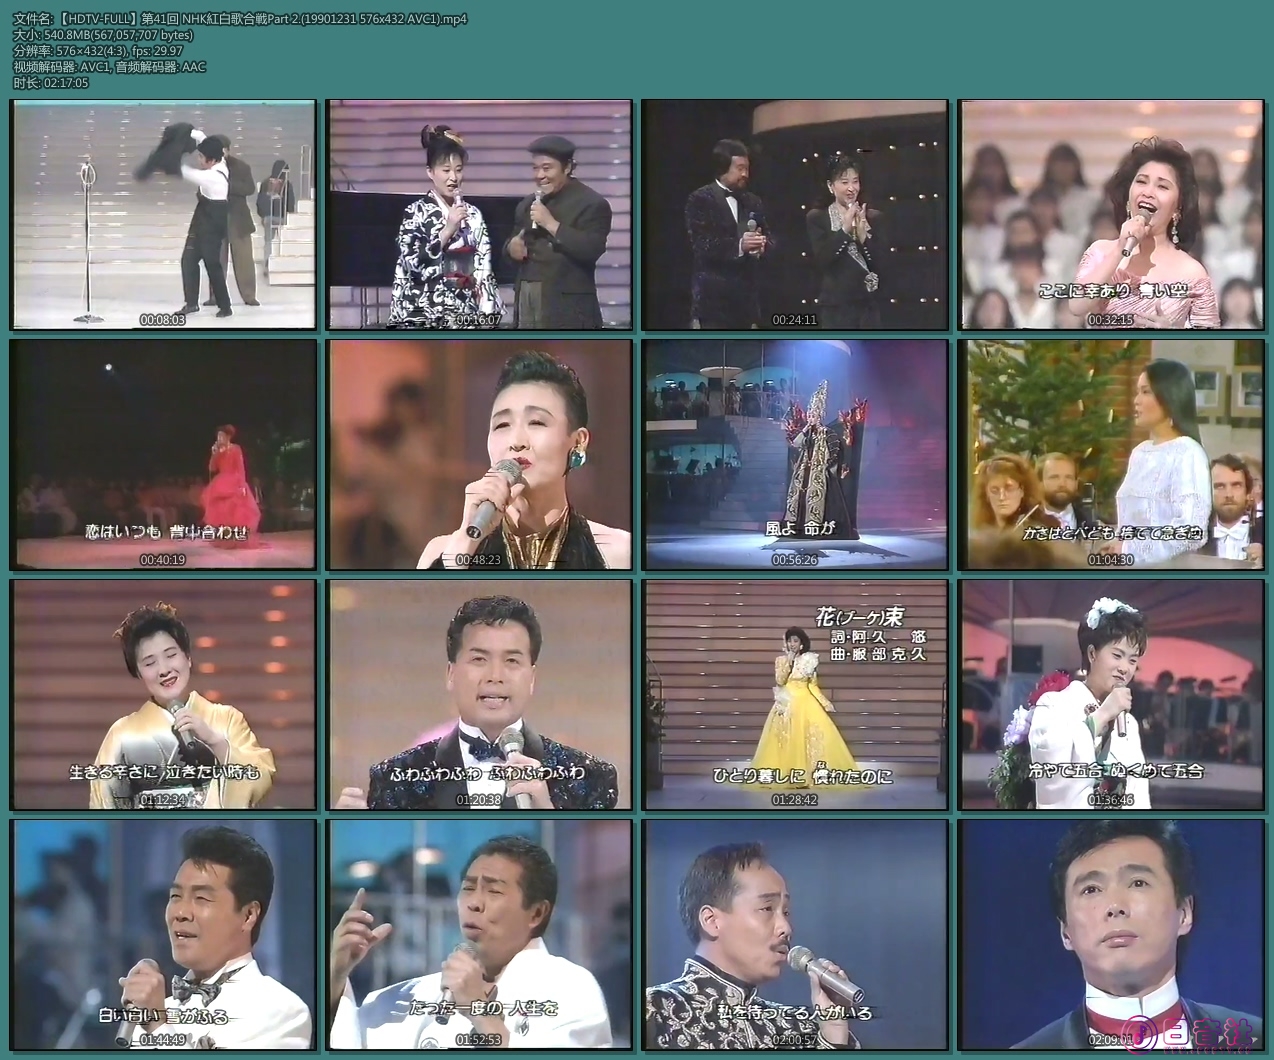 【HDTV-FULL】第41回 NHK紅白歌合戦Part 2.(19901231 576x432 AVC1).mp4.jpg